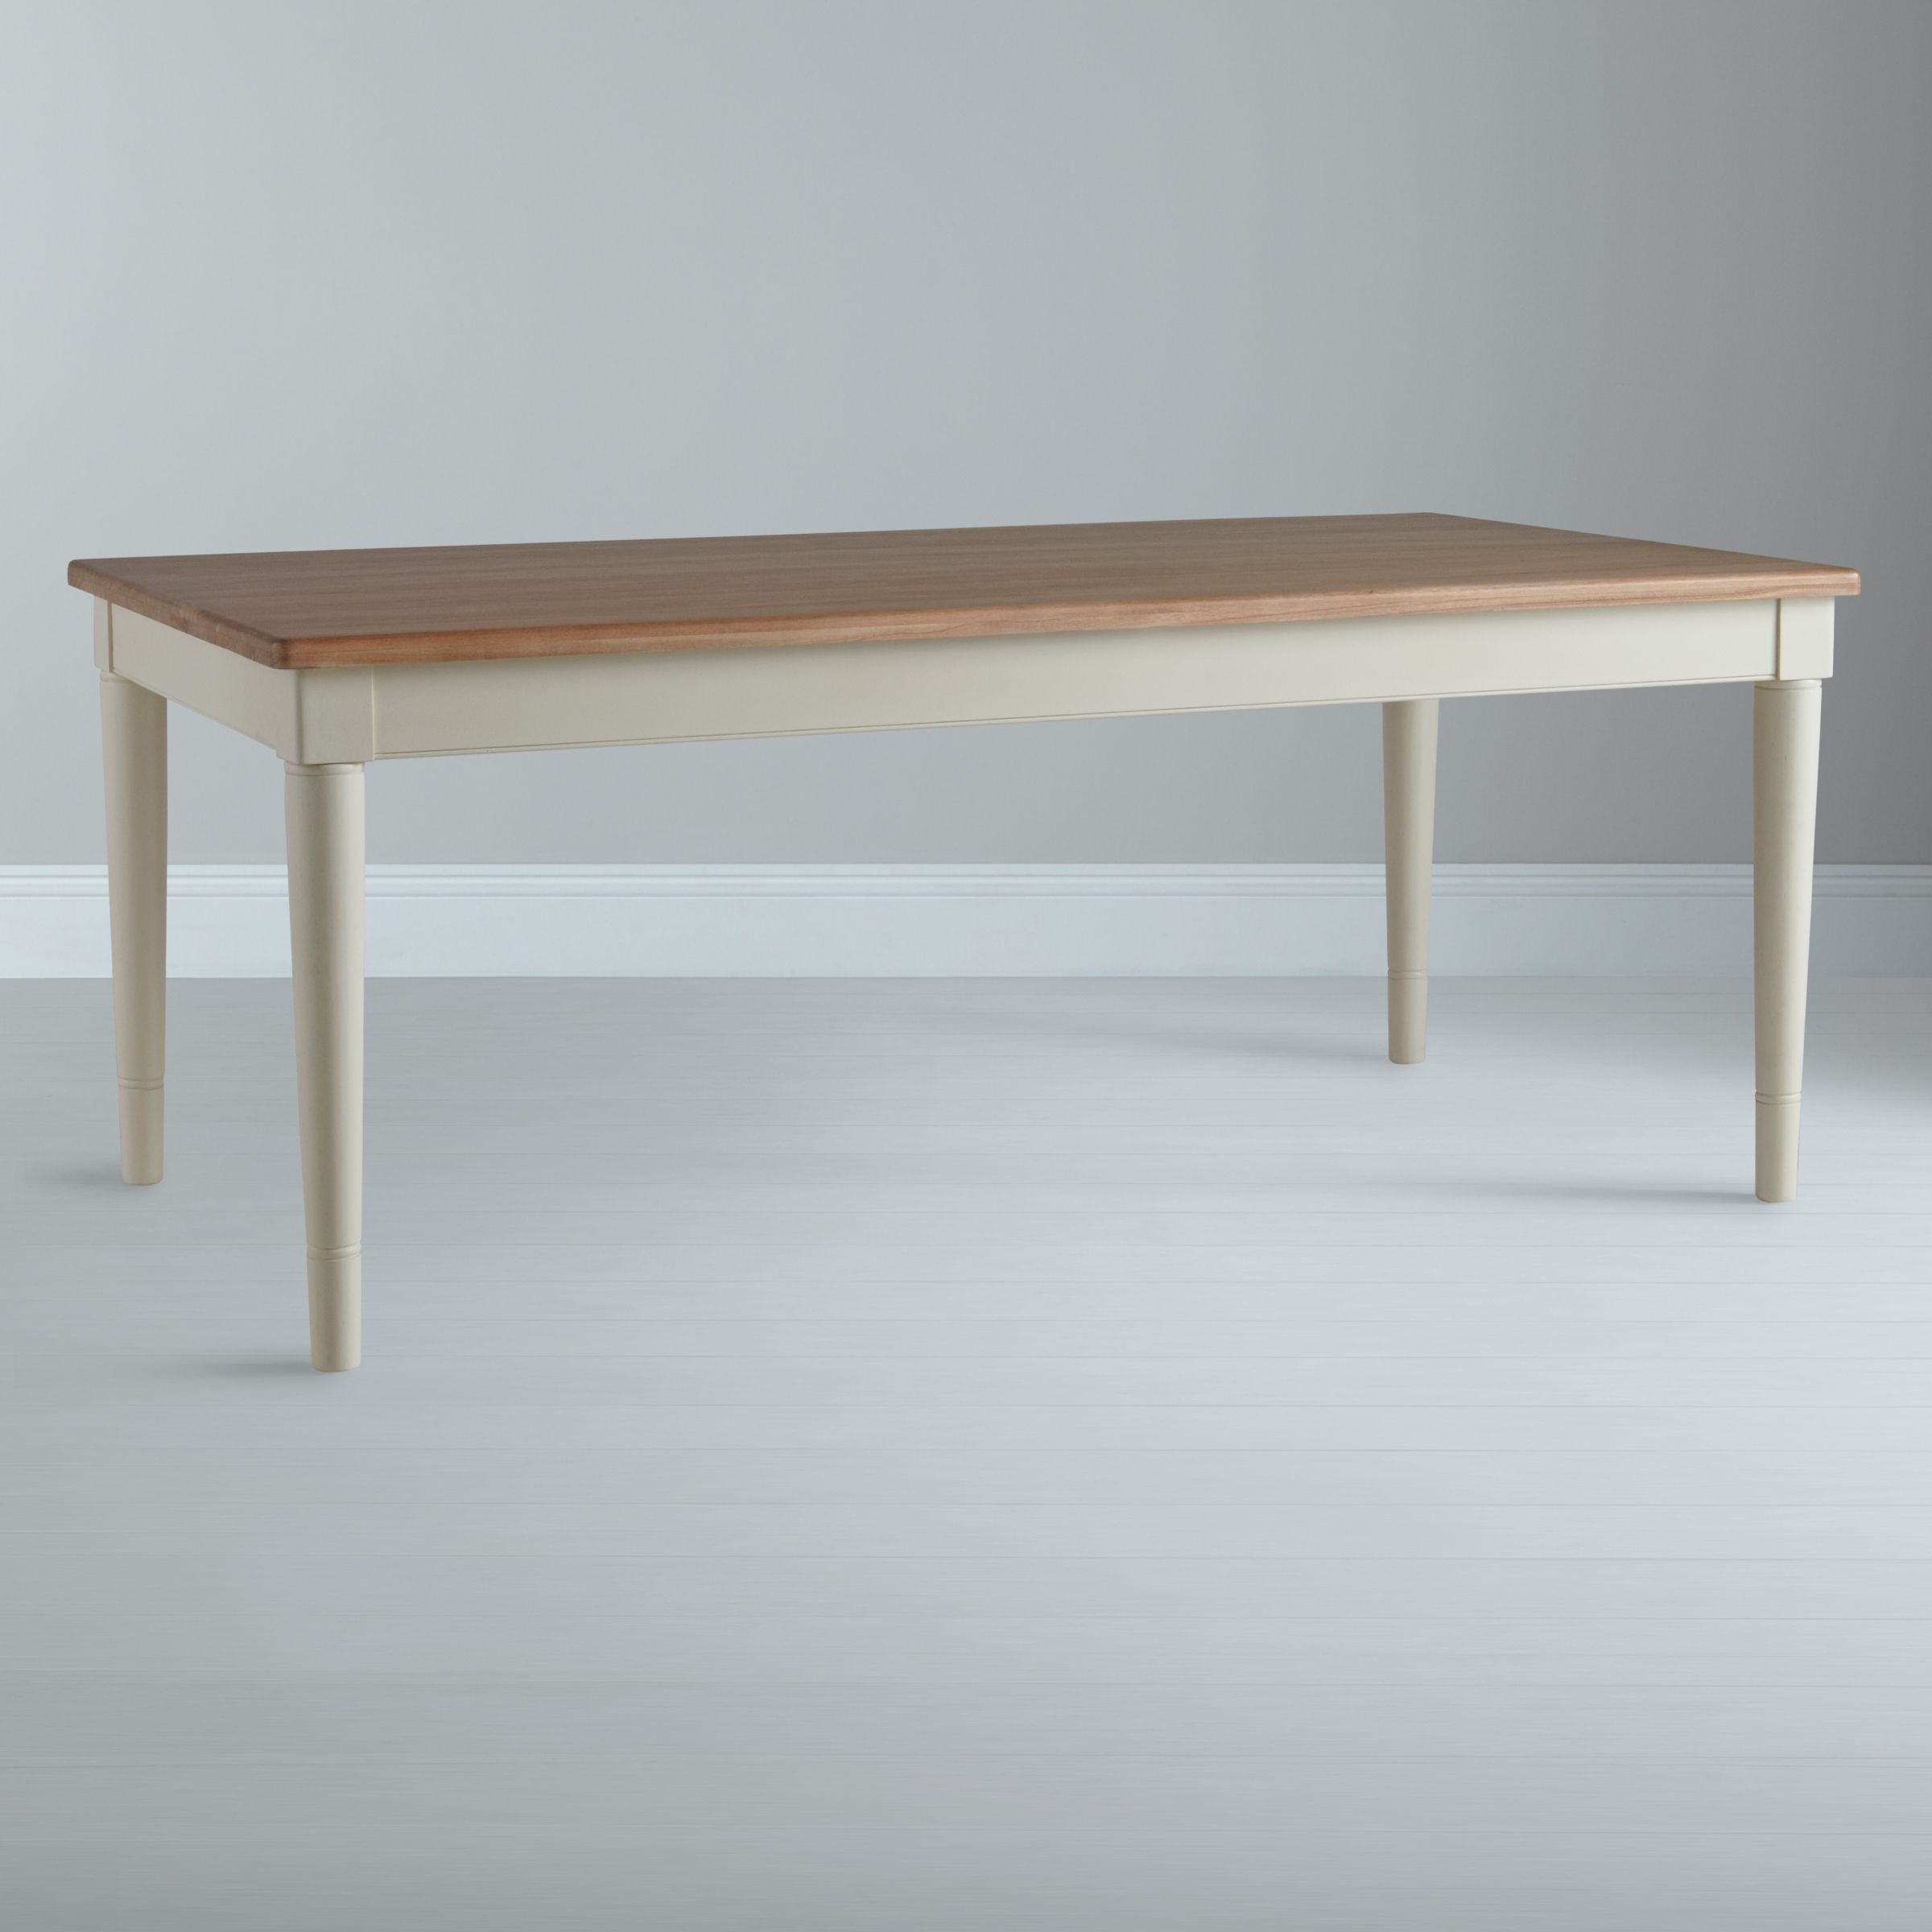 John Lewis Drift Rectangular 8 Seater Dining Table, White, width 190cm